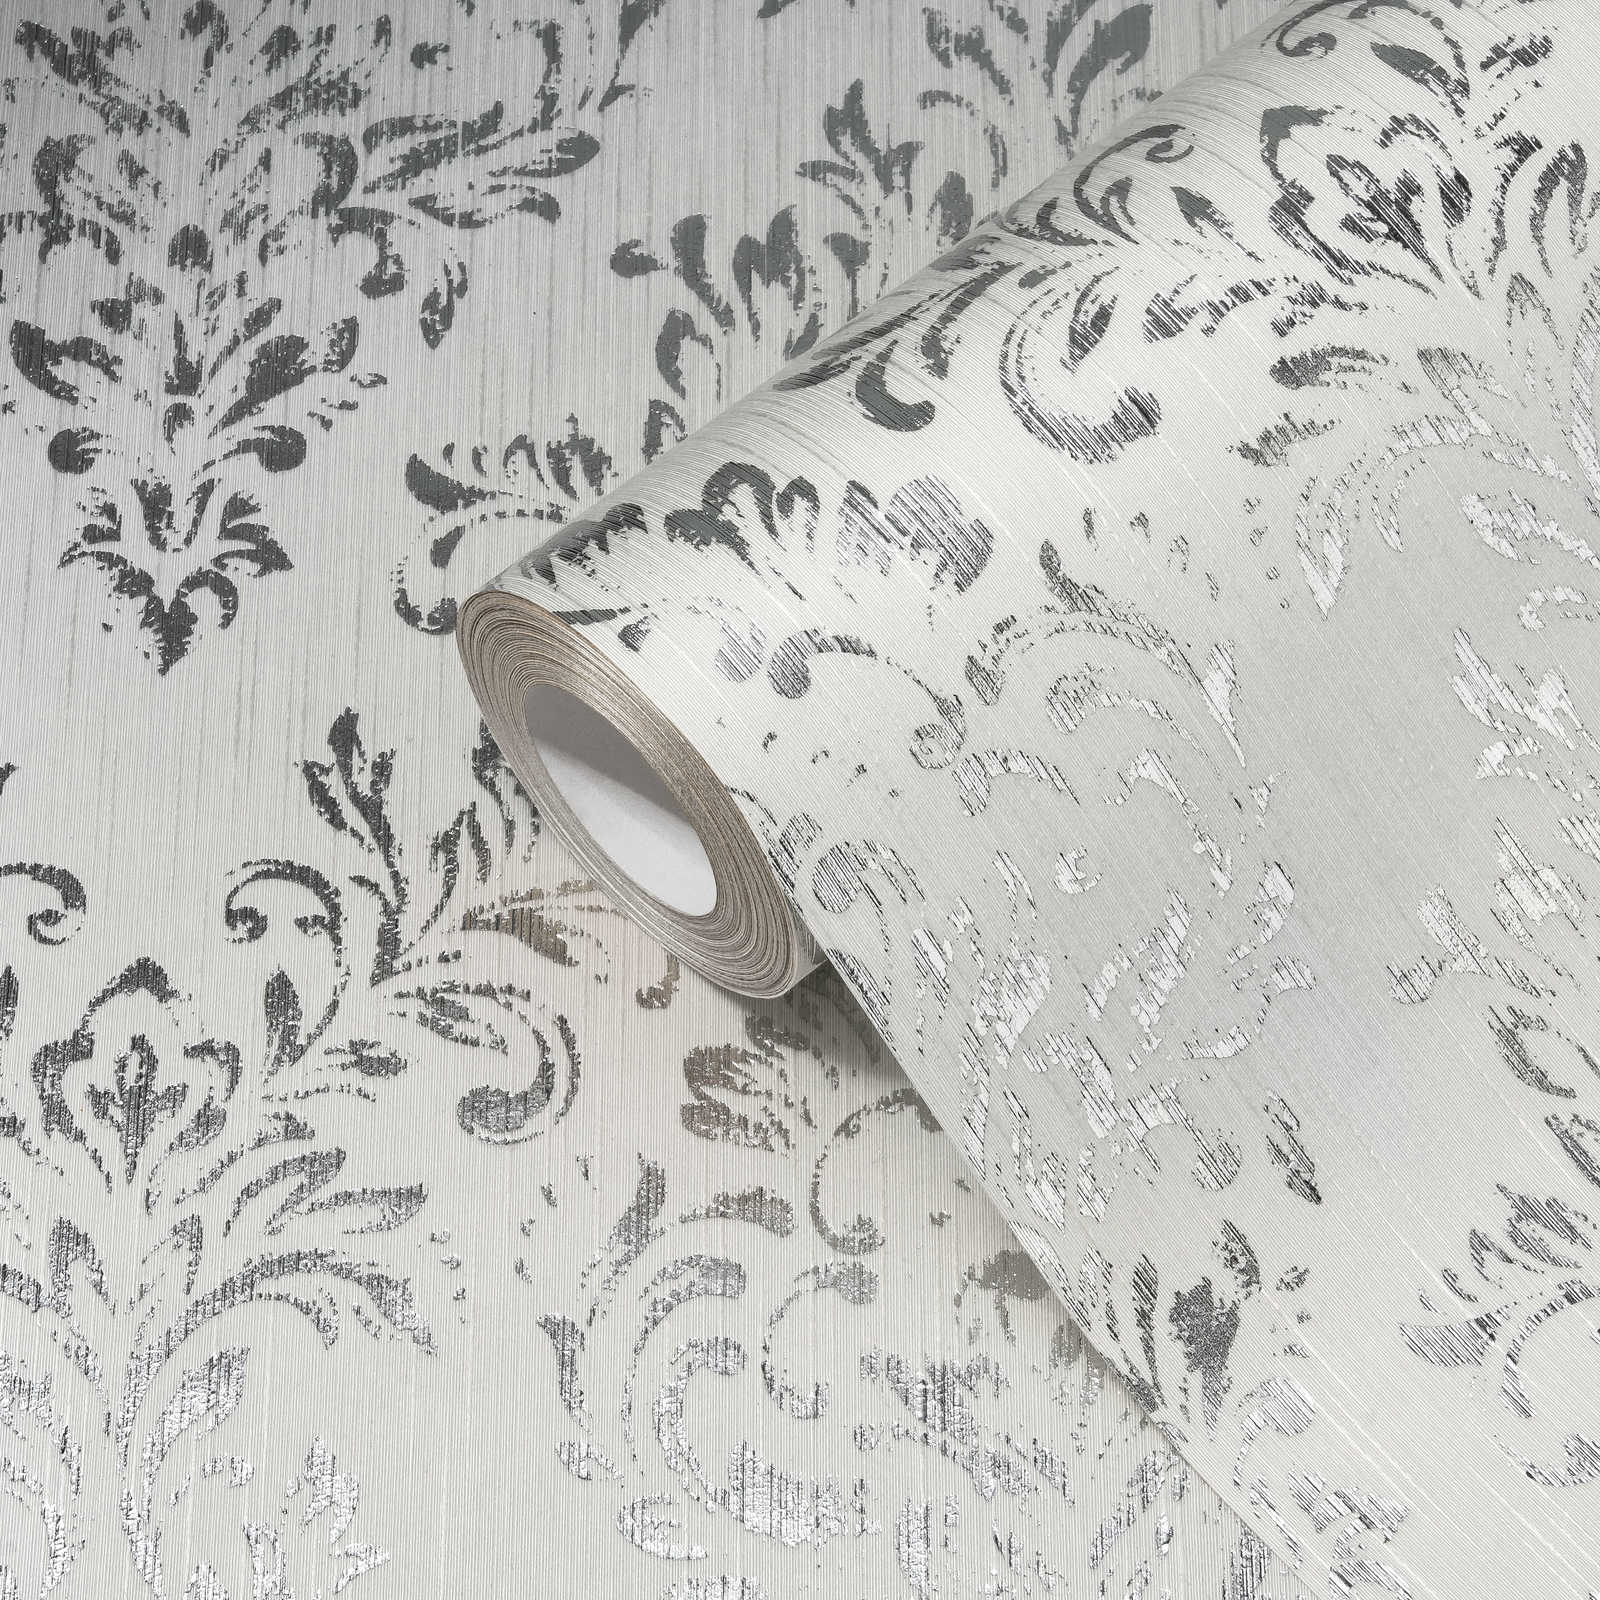             Papier peint ornemental dans un design floral avec effet scintillant - argent, blanc
        